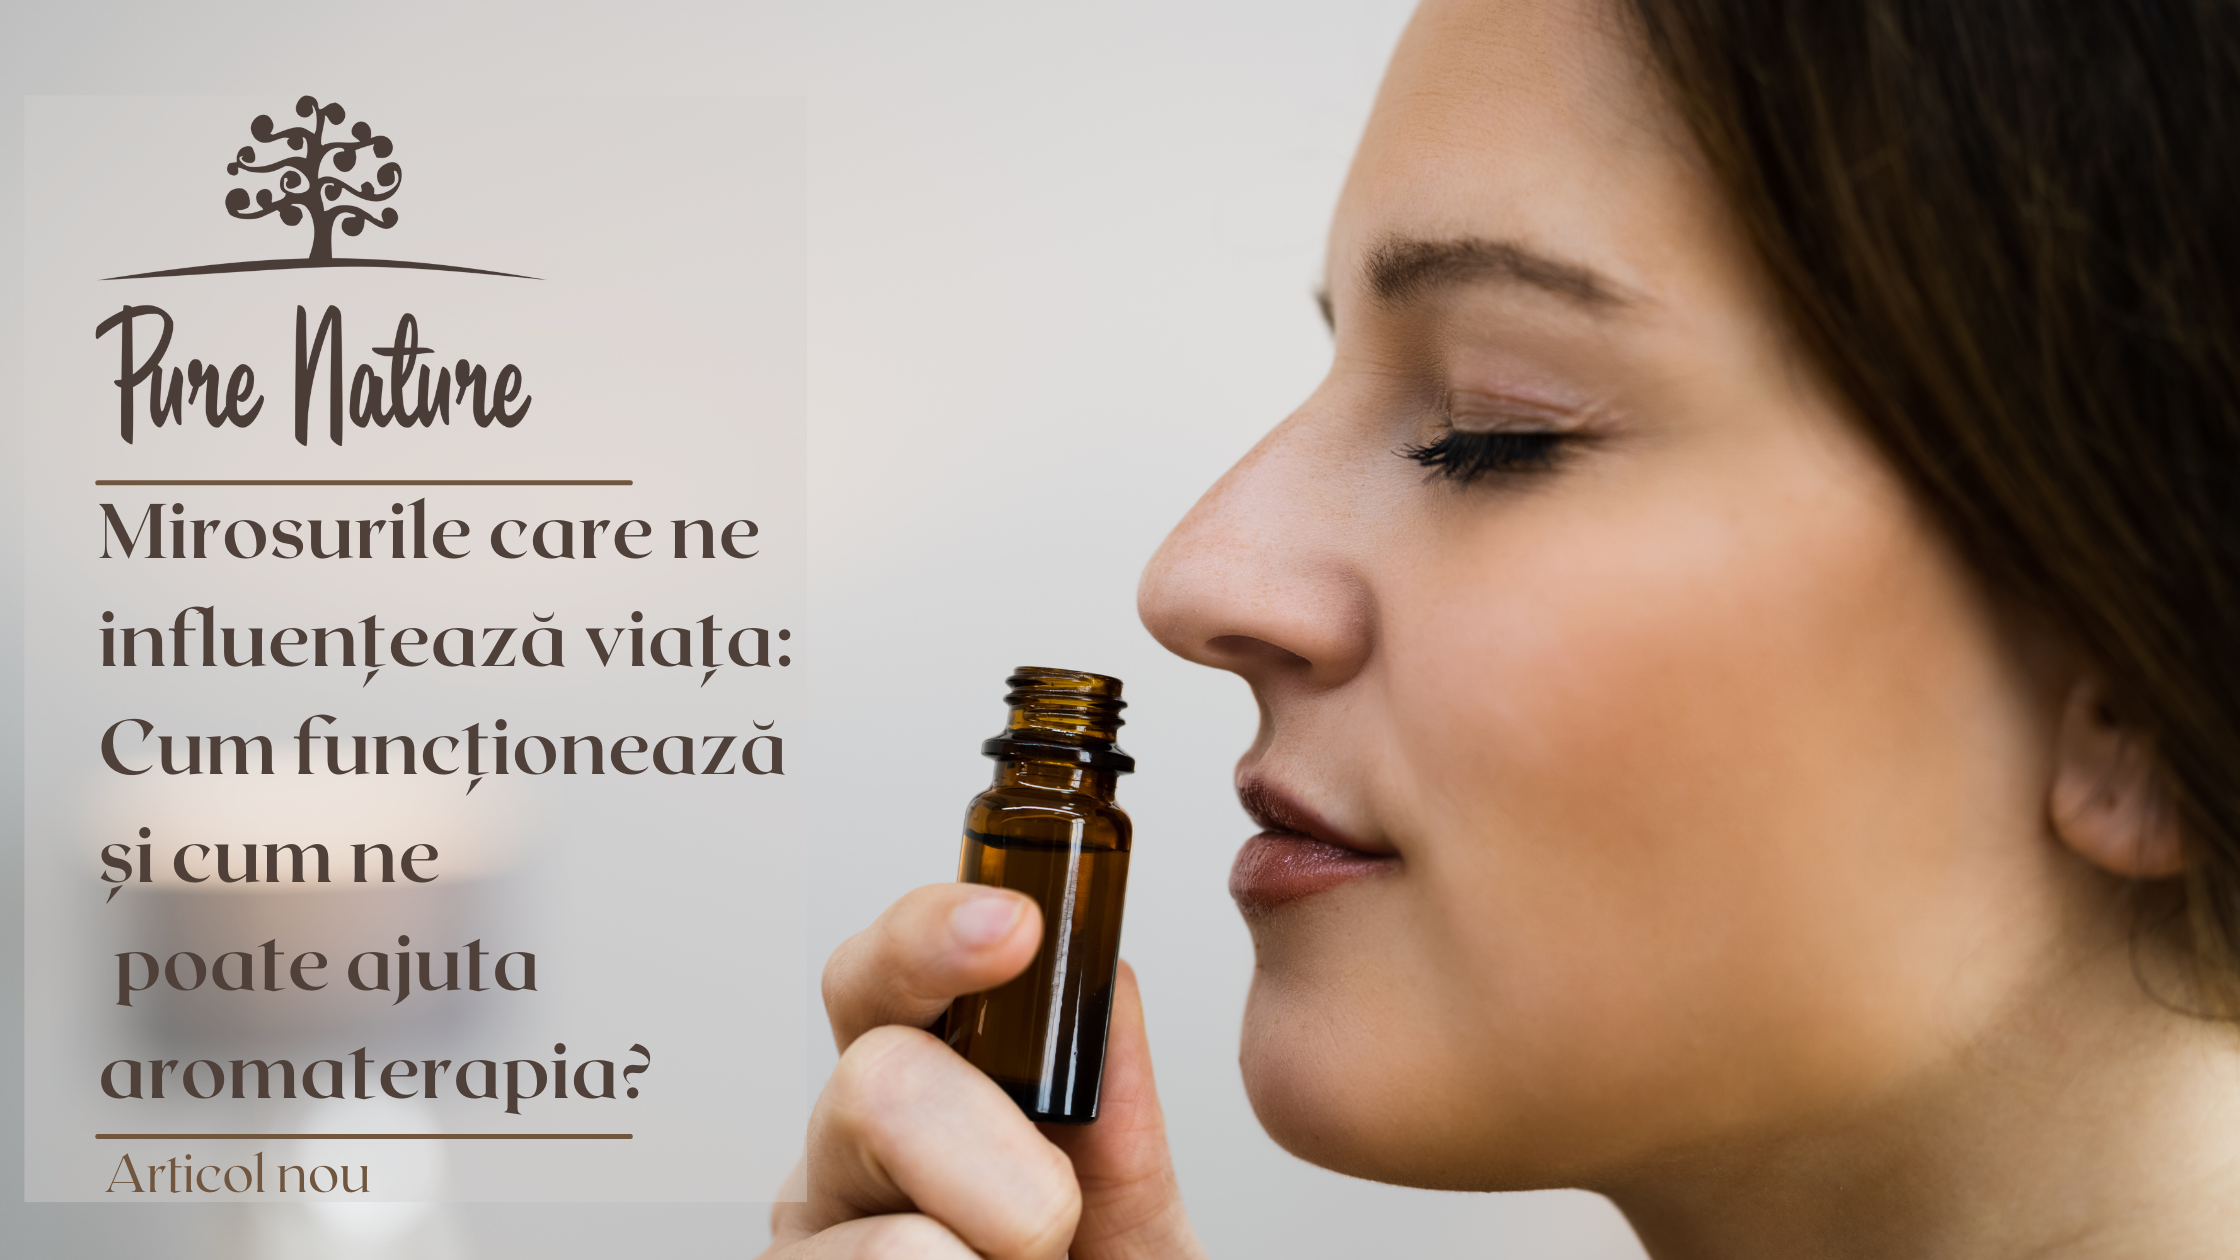 Mirosurile care ne influențează viața: cum funcționează și cum ne poate ajuta aromaterapia?